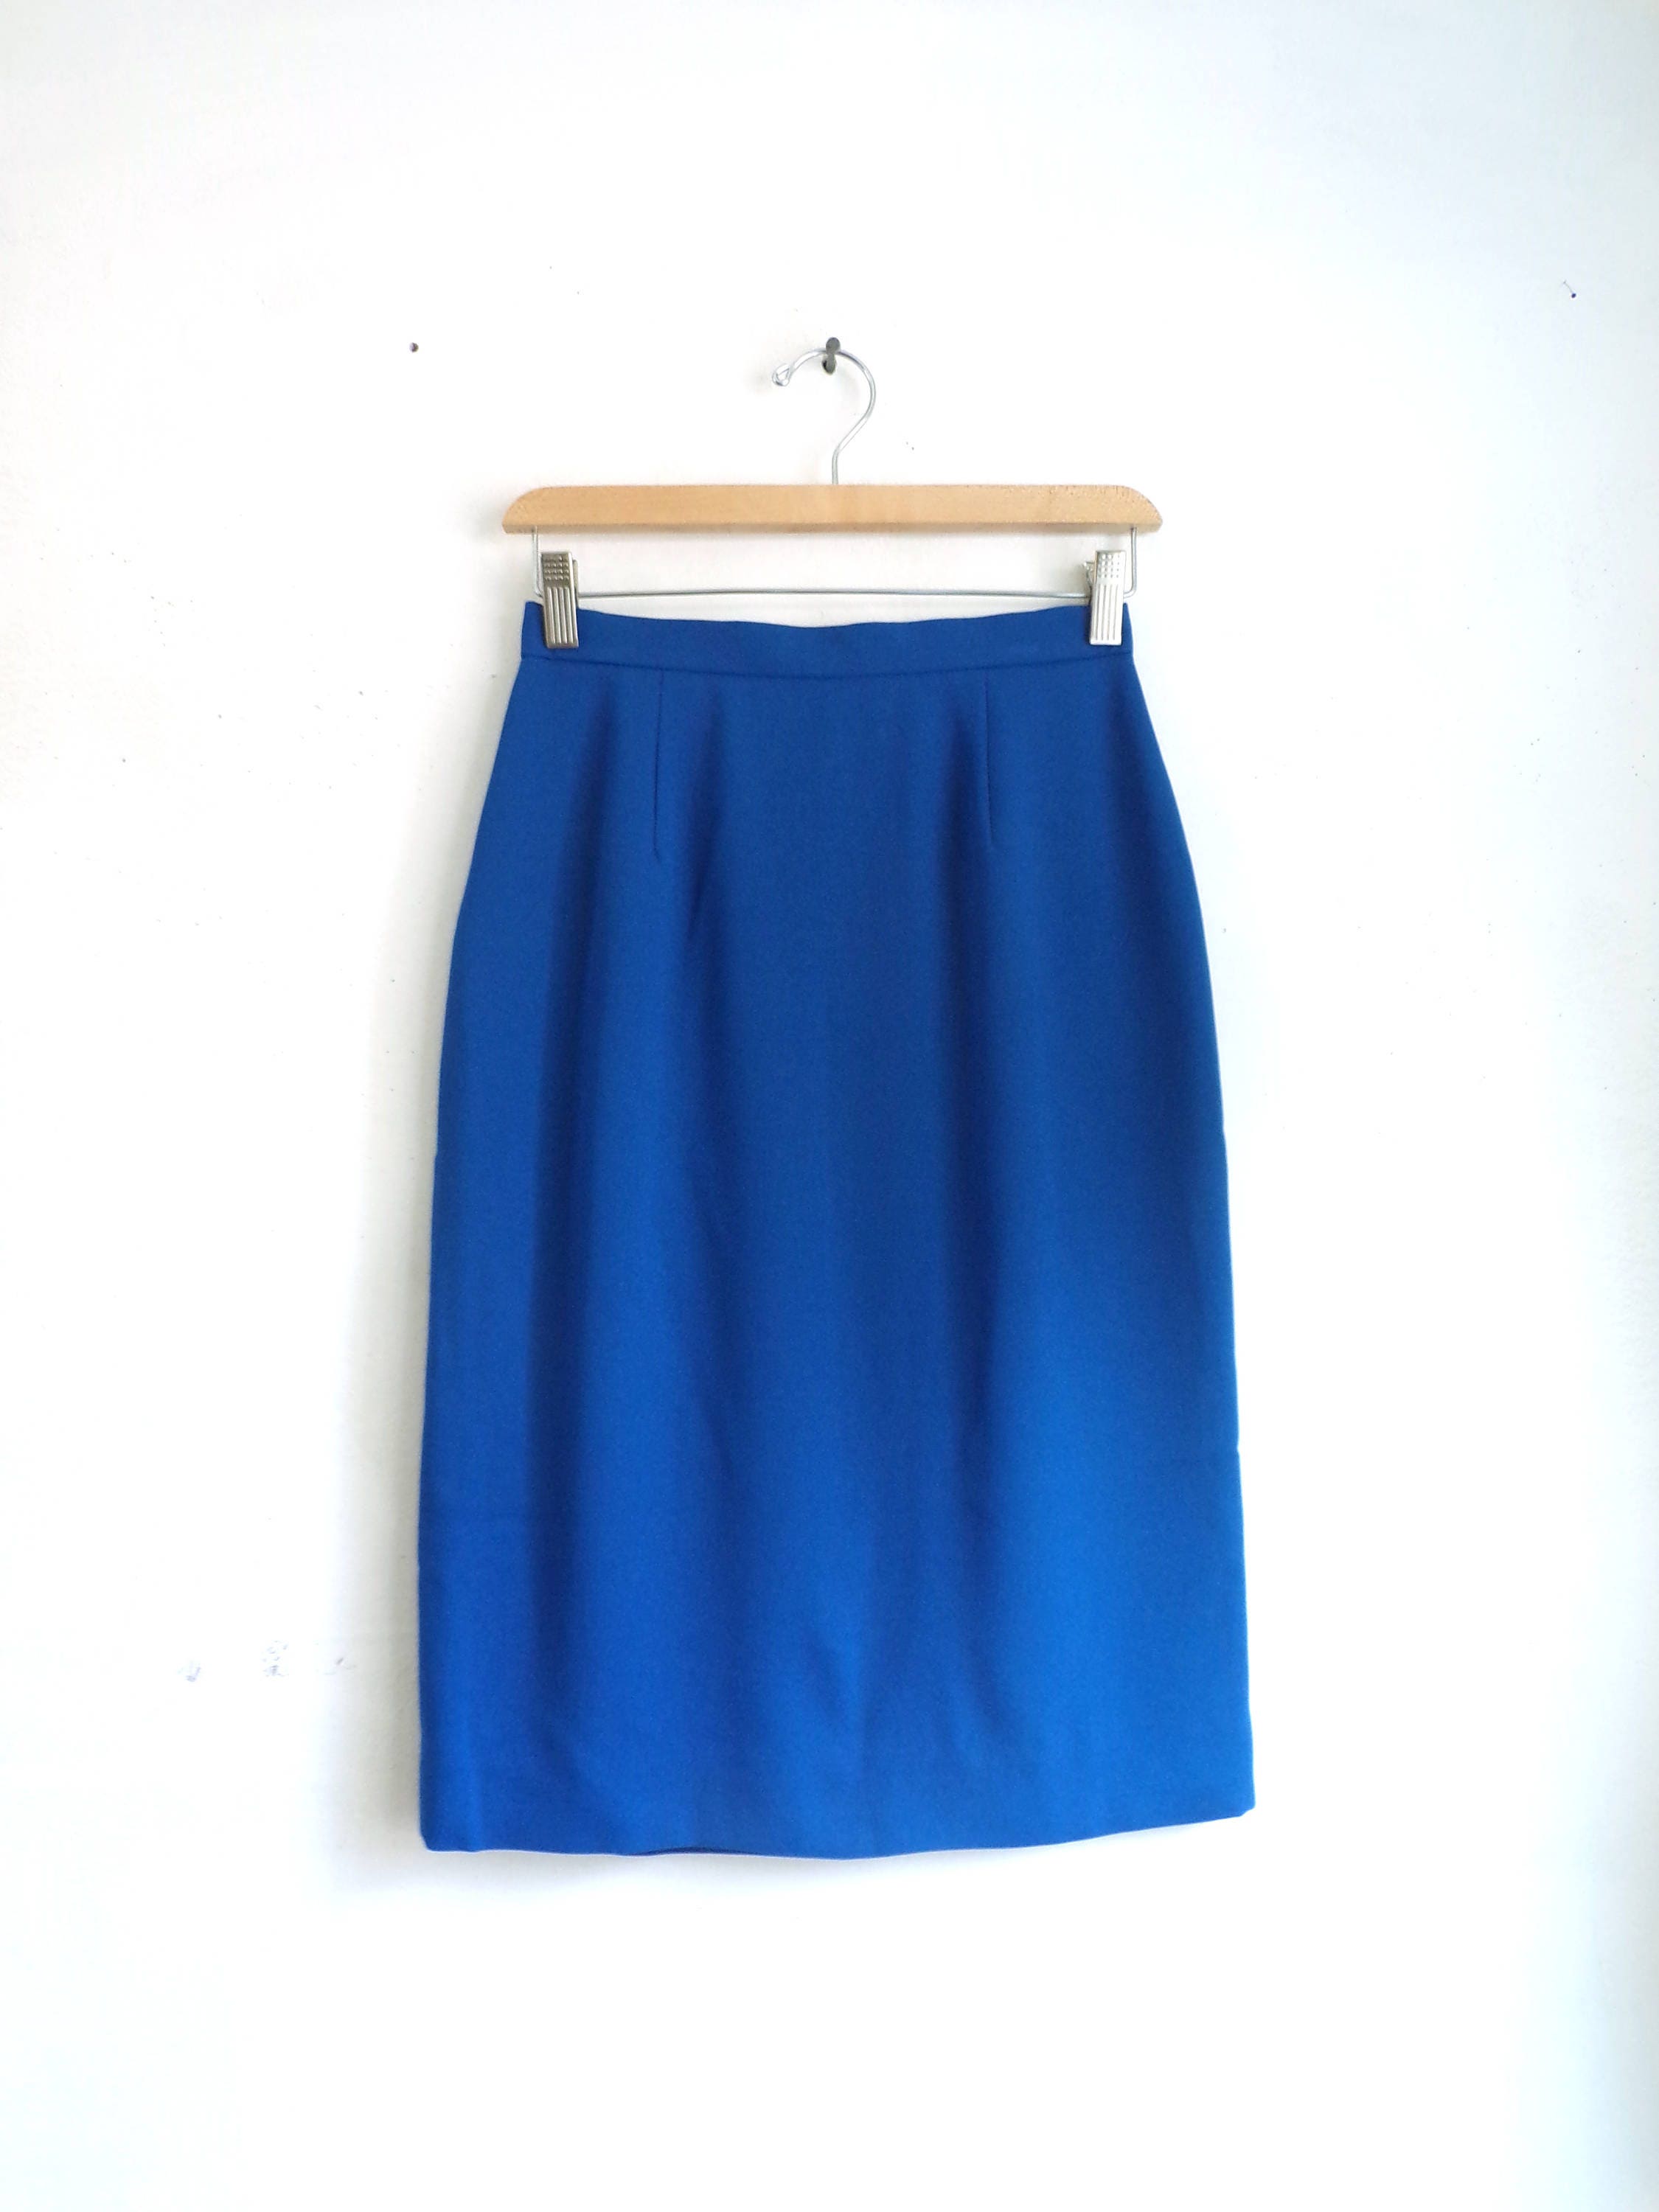 80s Pencil Skirt Cobalt Blue Skirt Straight Cut Crepe - Etsy